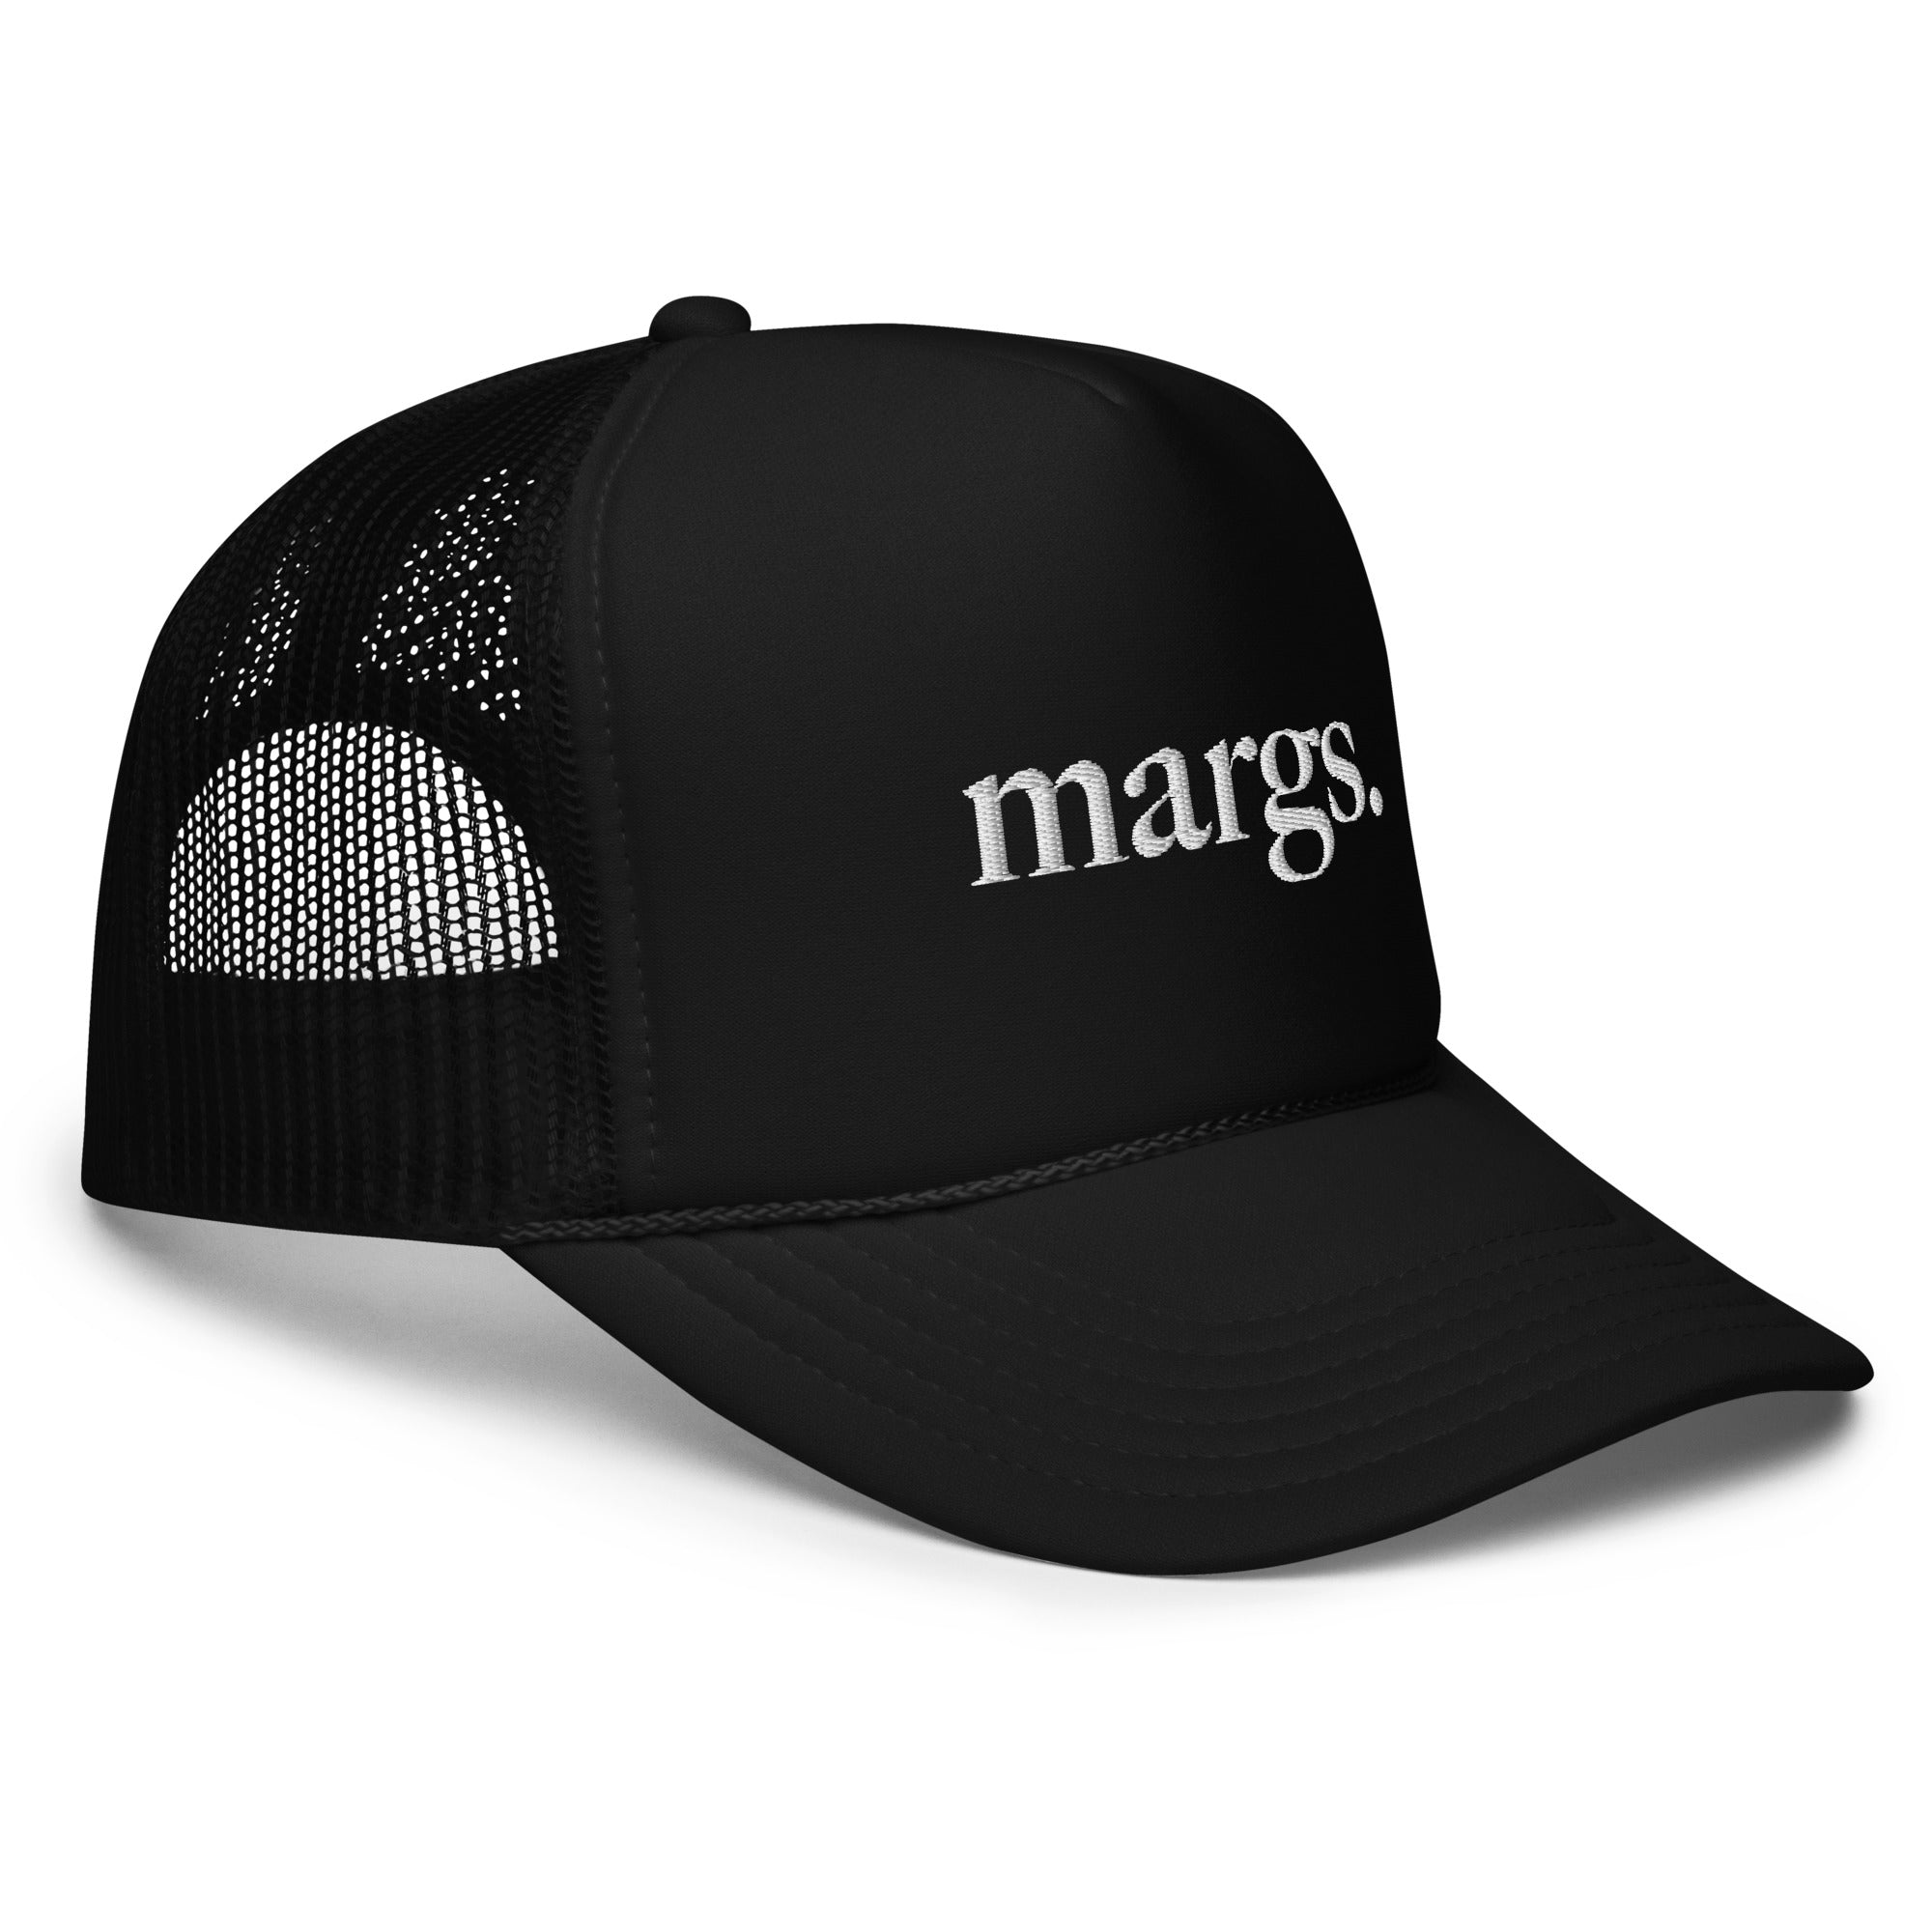 Margs. Foam Trucker Hat